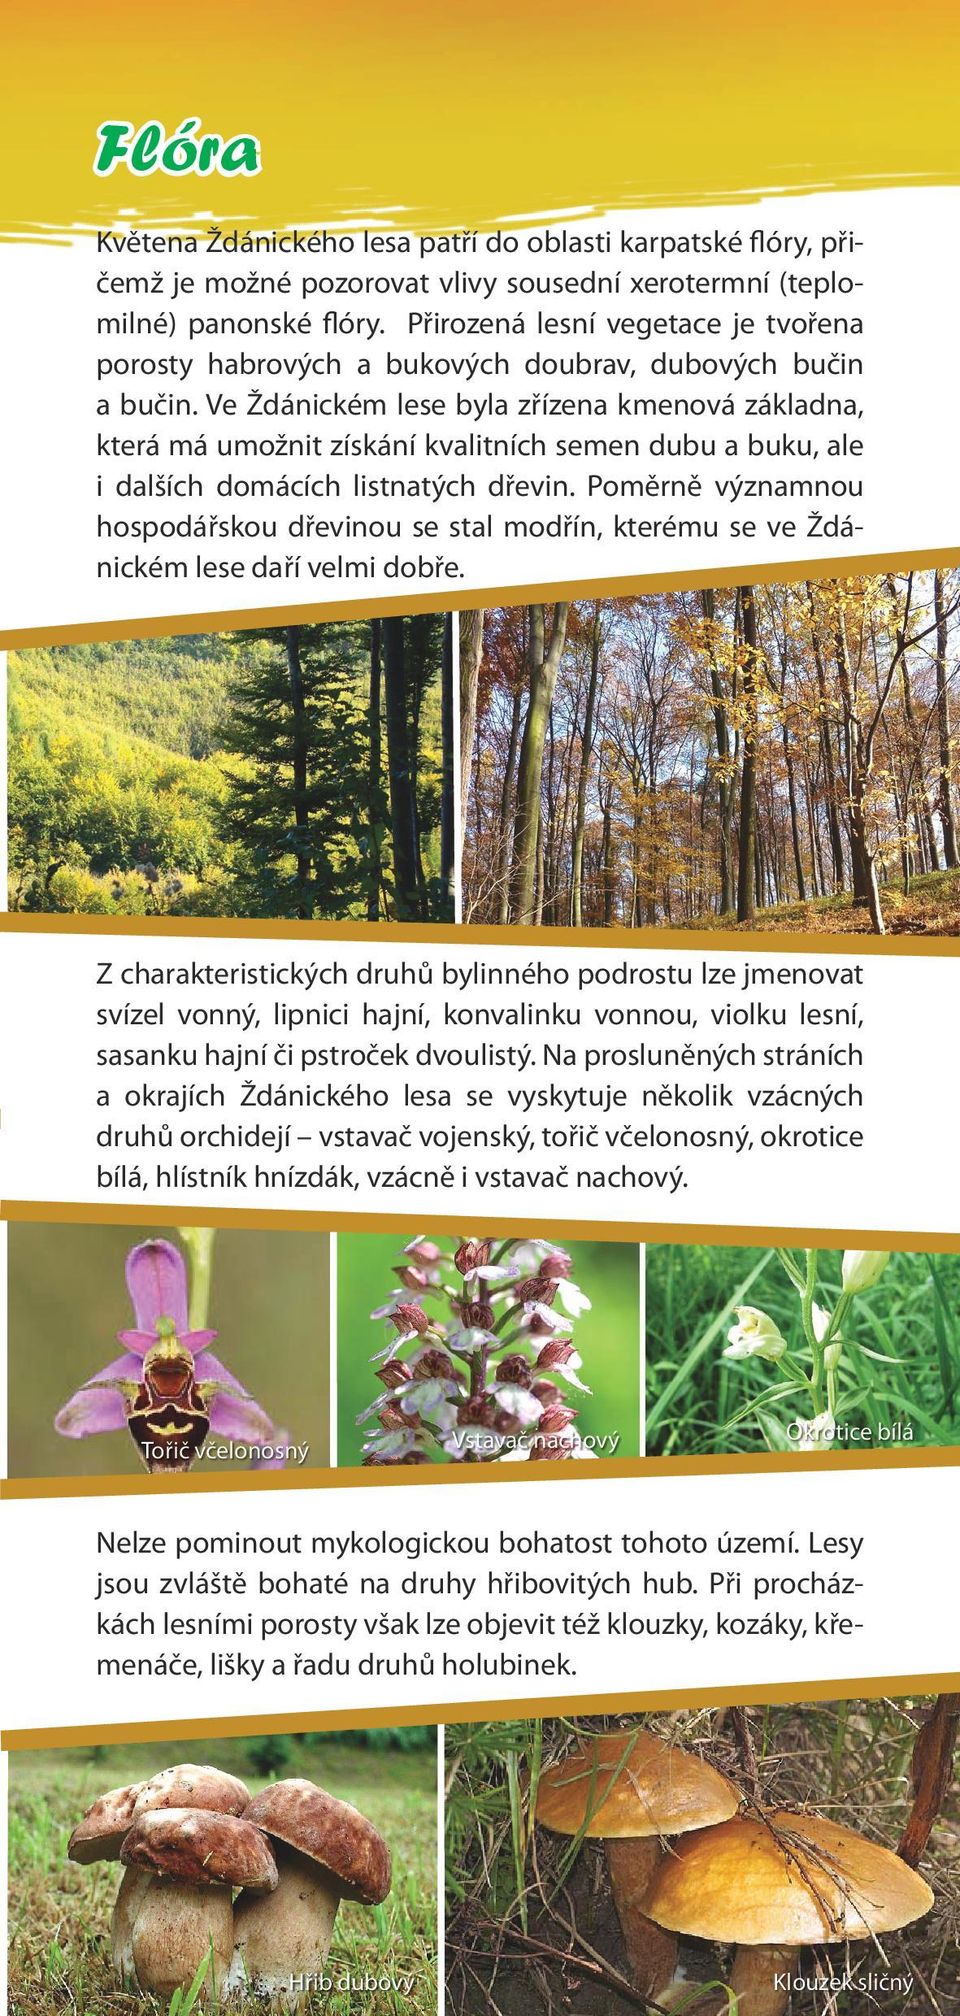 Ve Ždánickém lese byla zřízena kmenová základna, která má umožnit získání kvalitních semen dubu a buku, ale i dalších domácích listnatých dřevin.